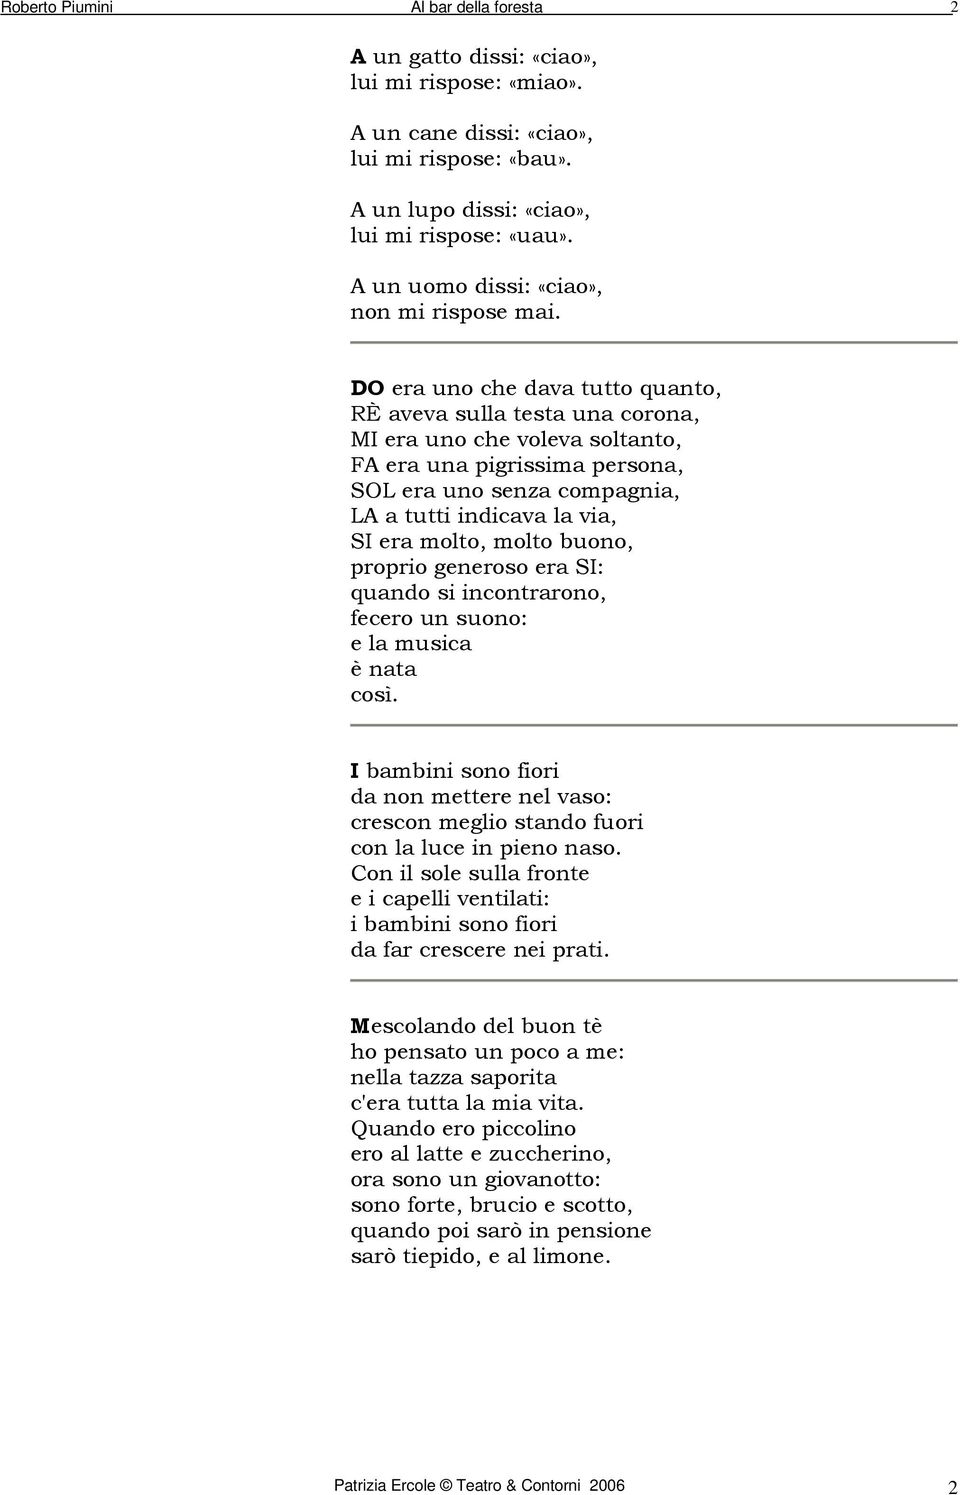 Poesie E Filastrocche Di Natale Di Piumini.Poesie Di Roberto Piumini Pdf Free Download